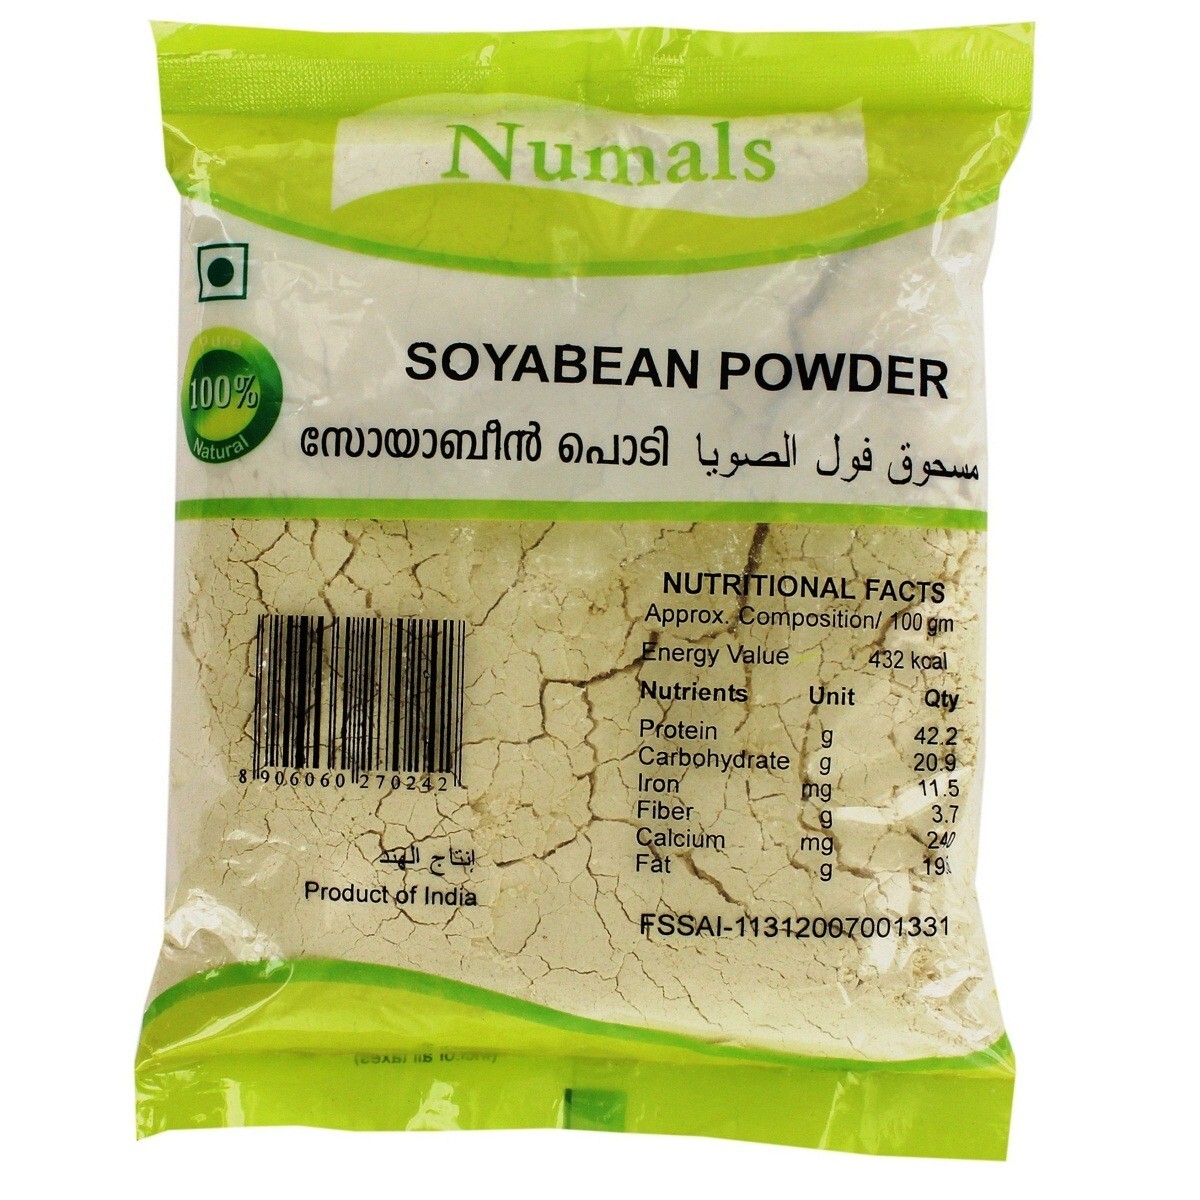 Numals Soyabean Powder 250g